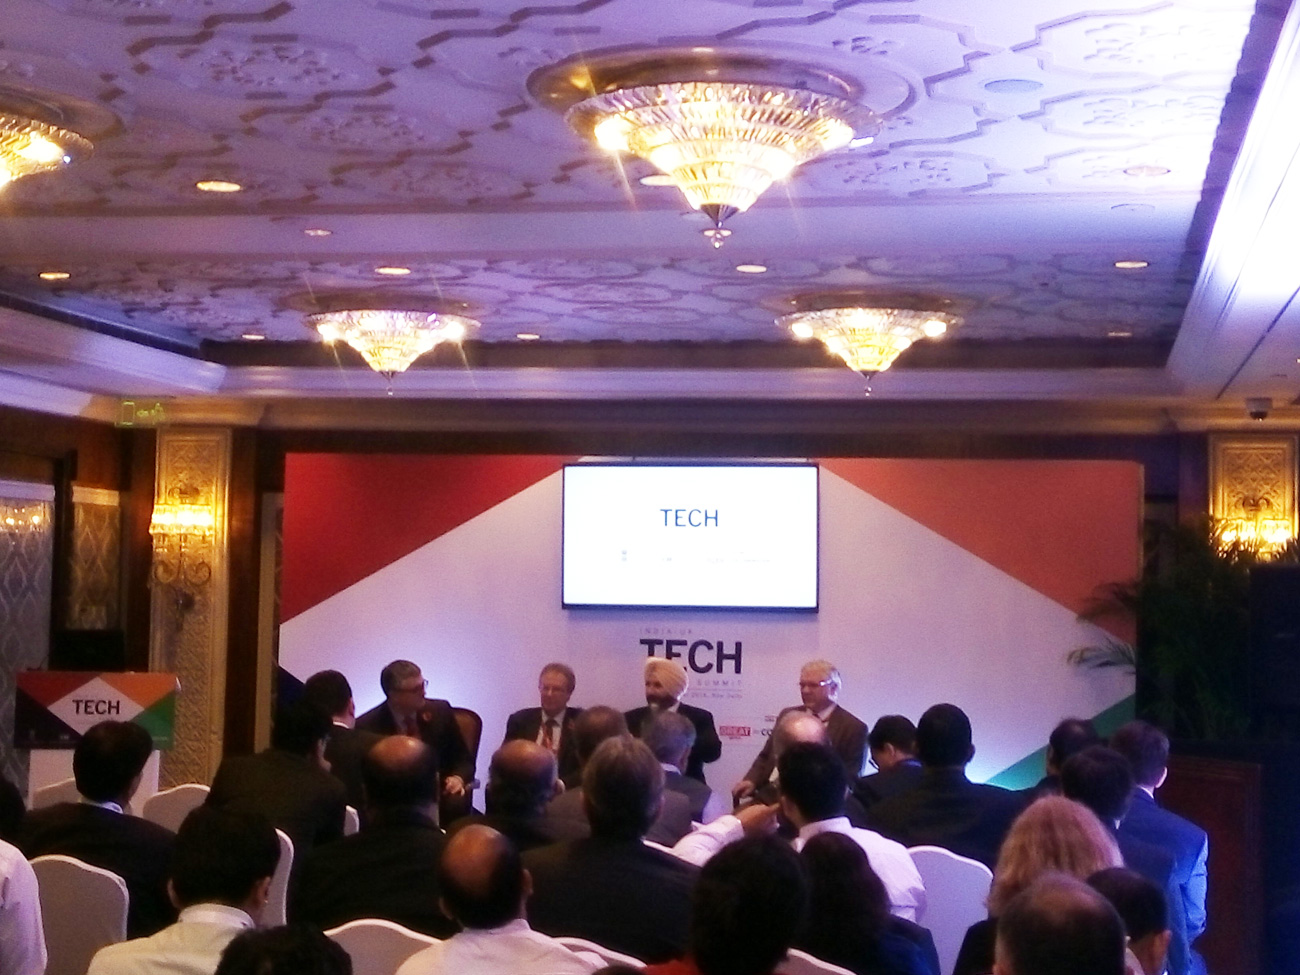 INDIA UK Technology Summit